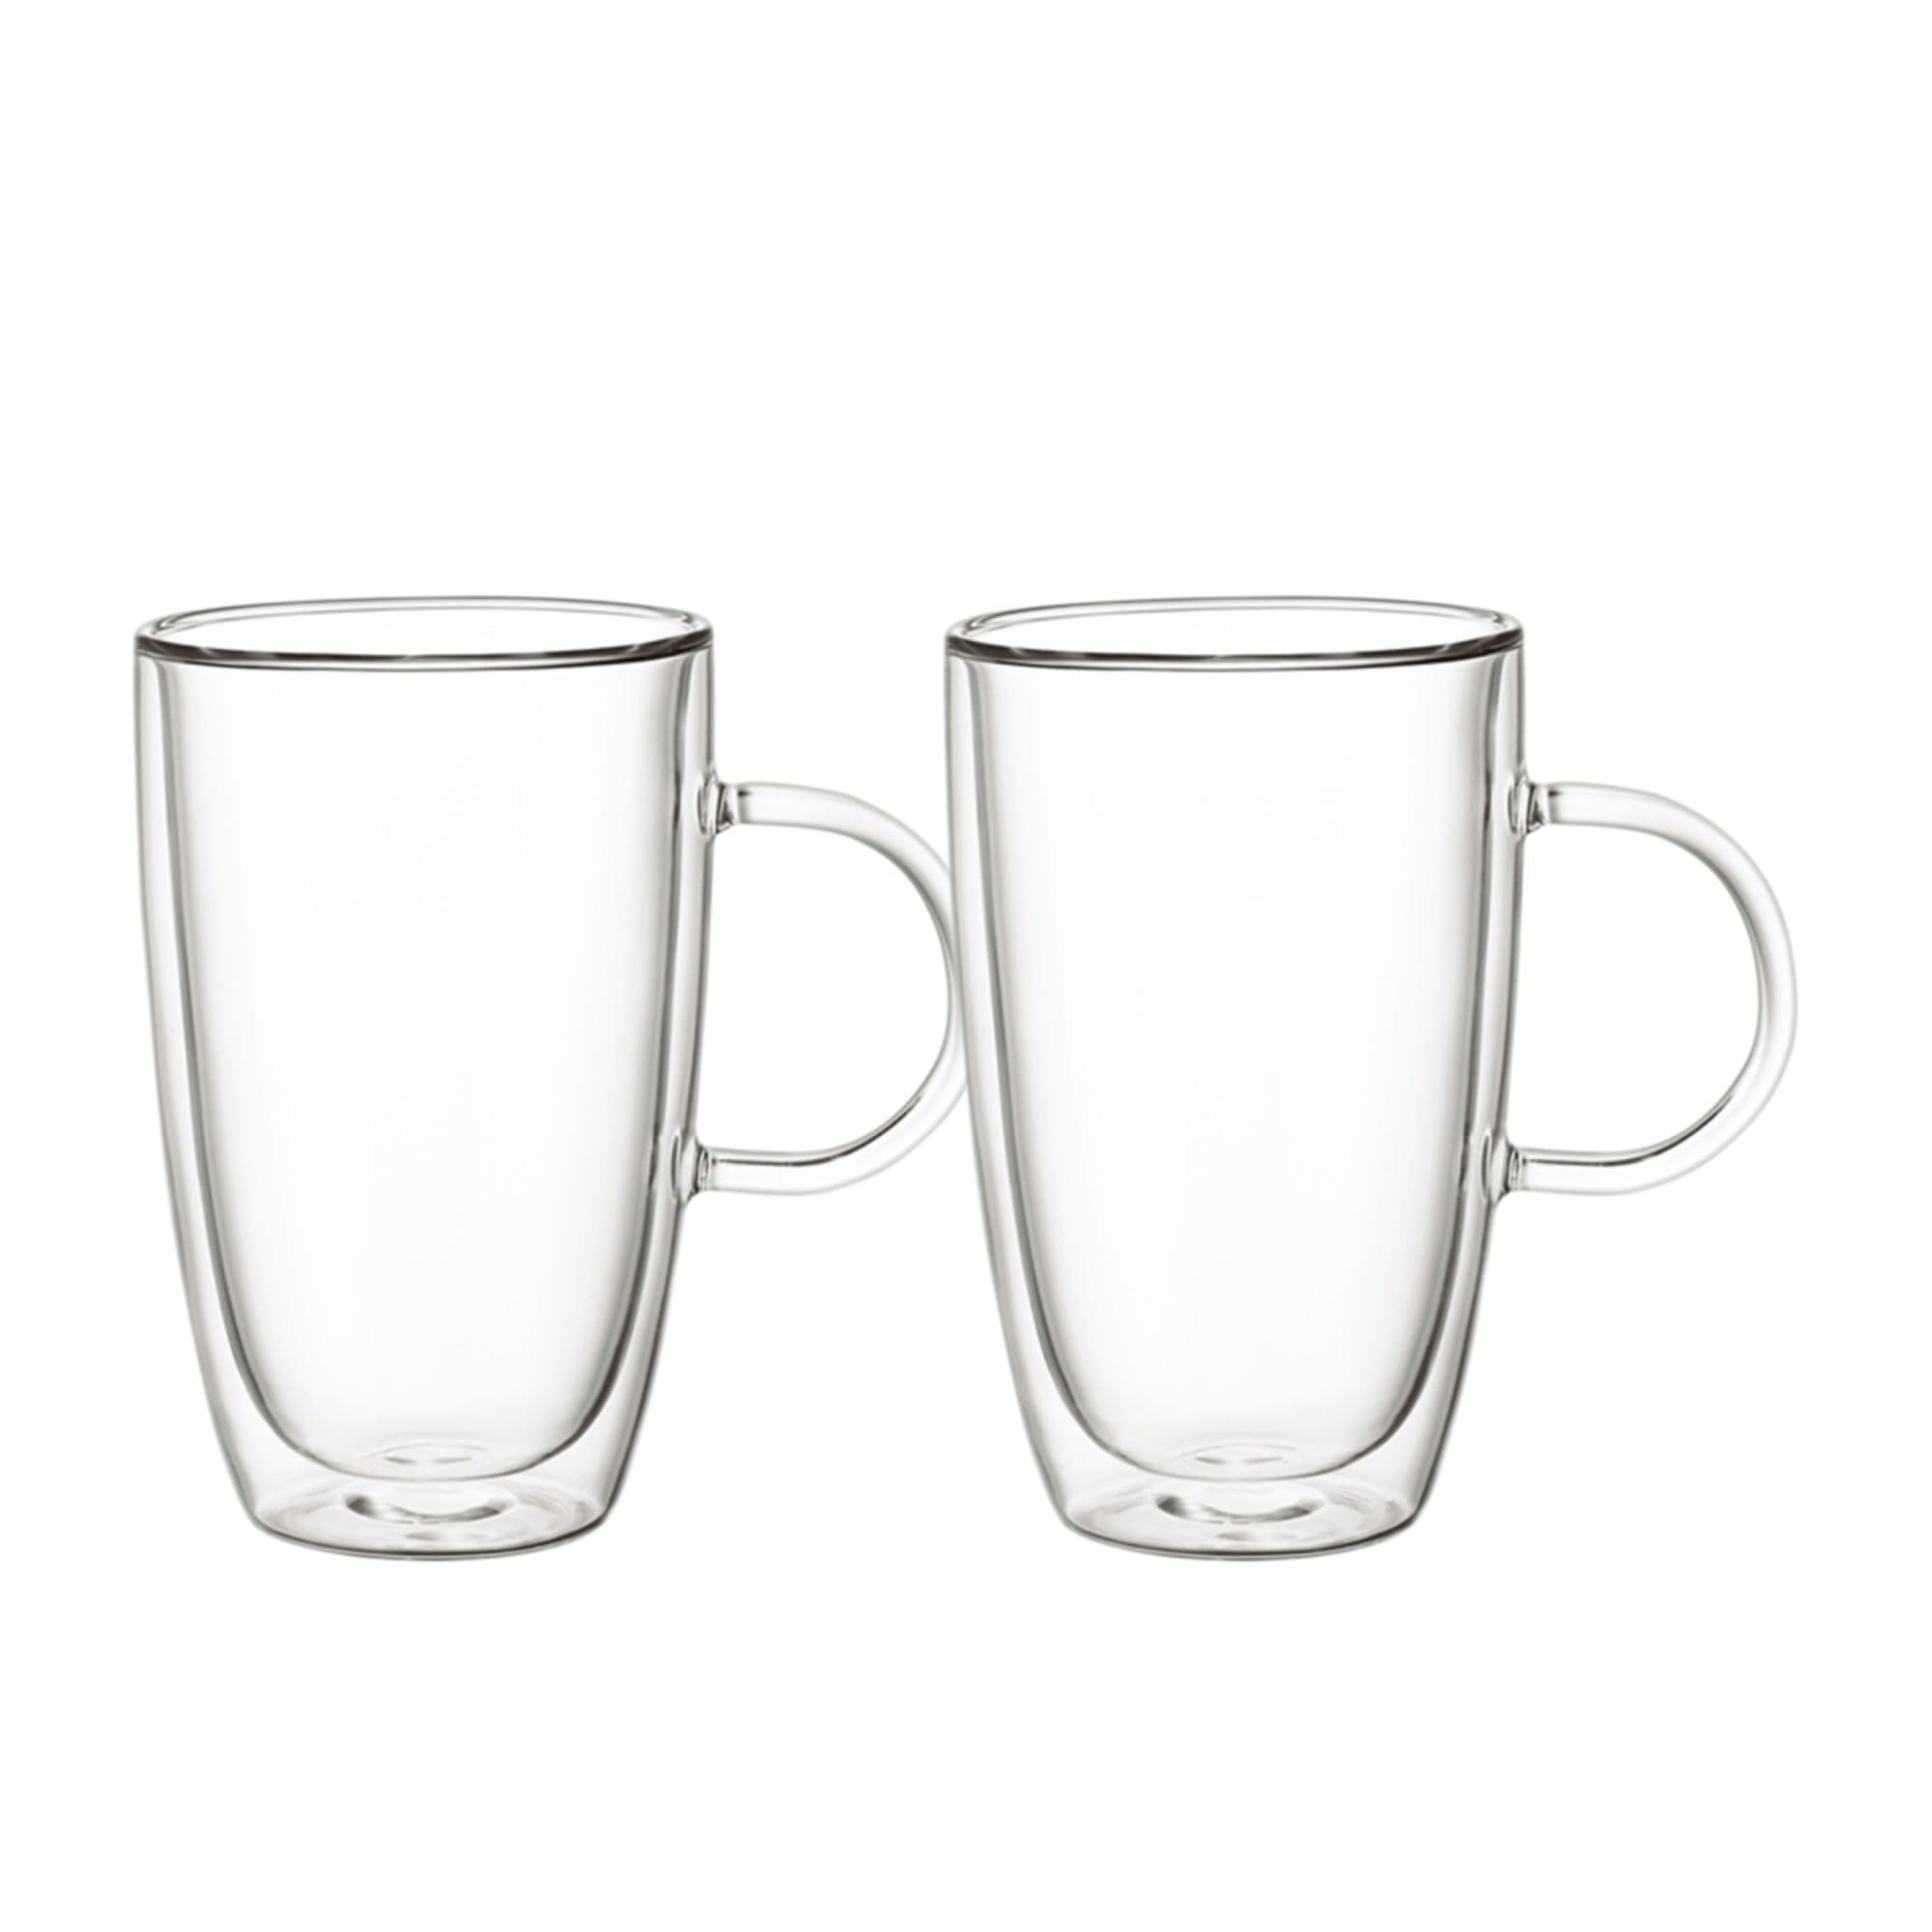 Villeroy & Boch Artesano Hot&Cold Beverages Cup 300ml Set of 2 Image 1